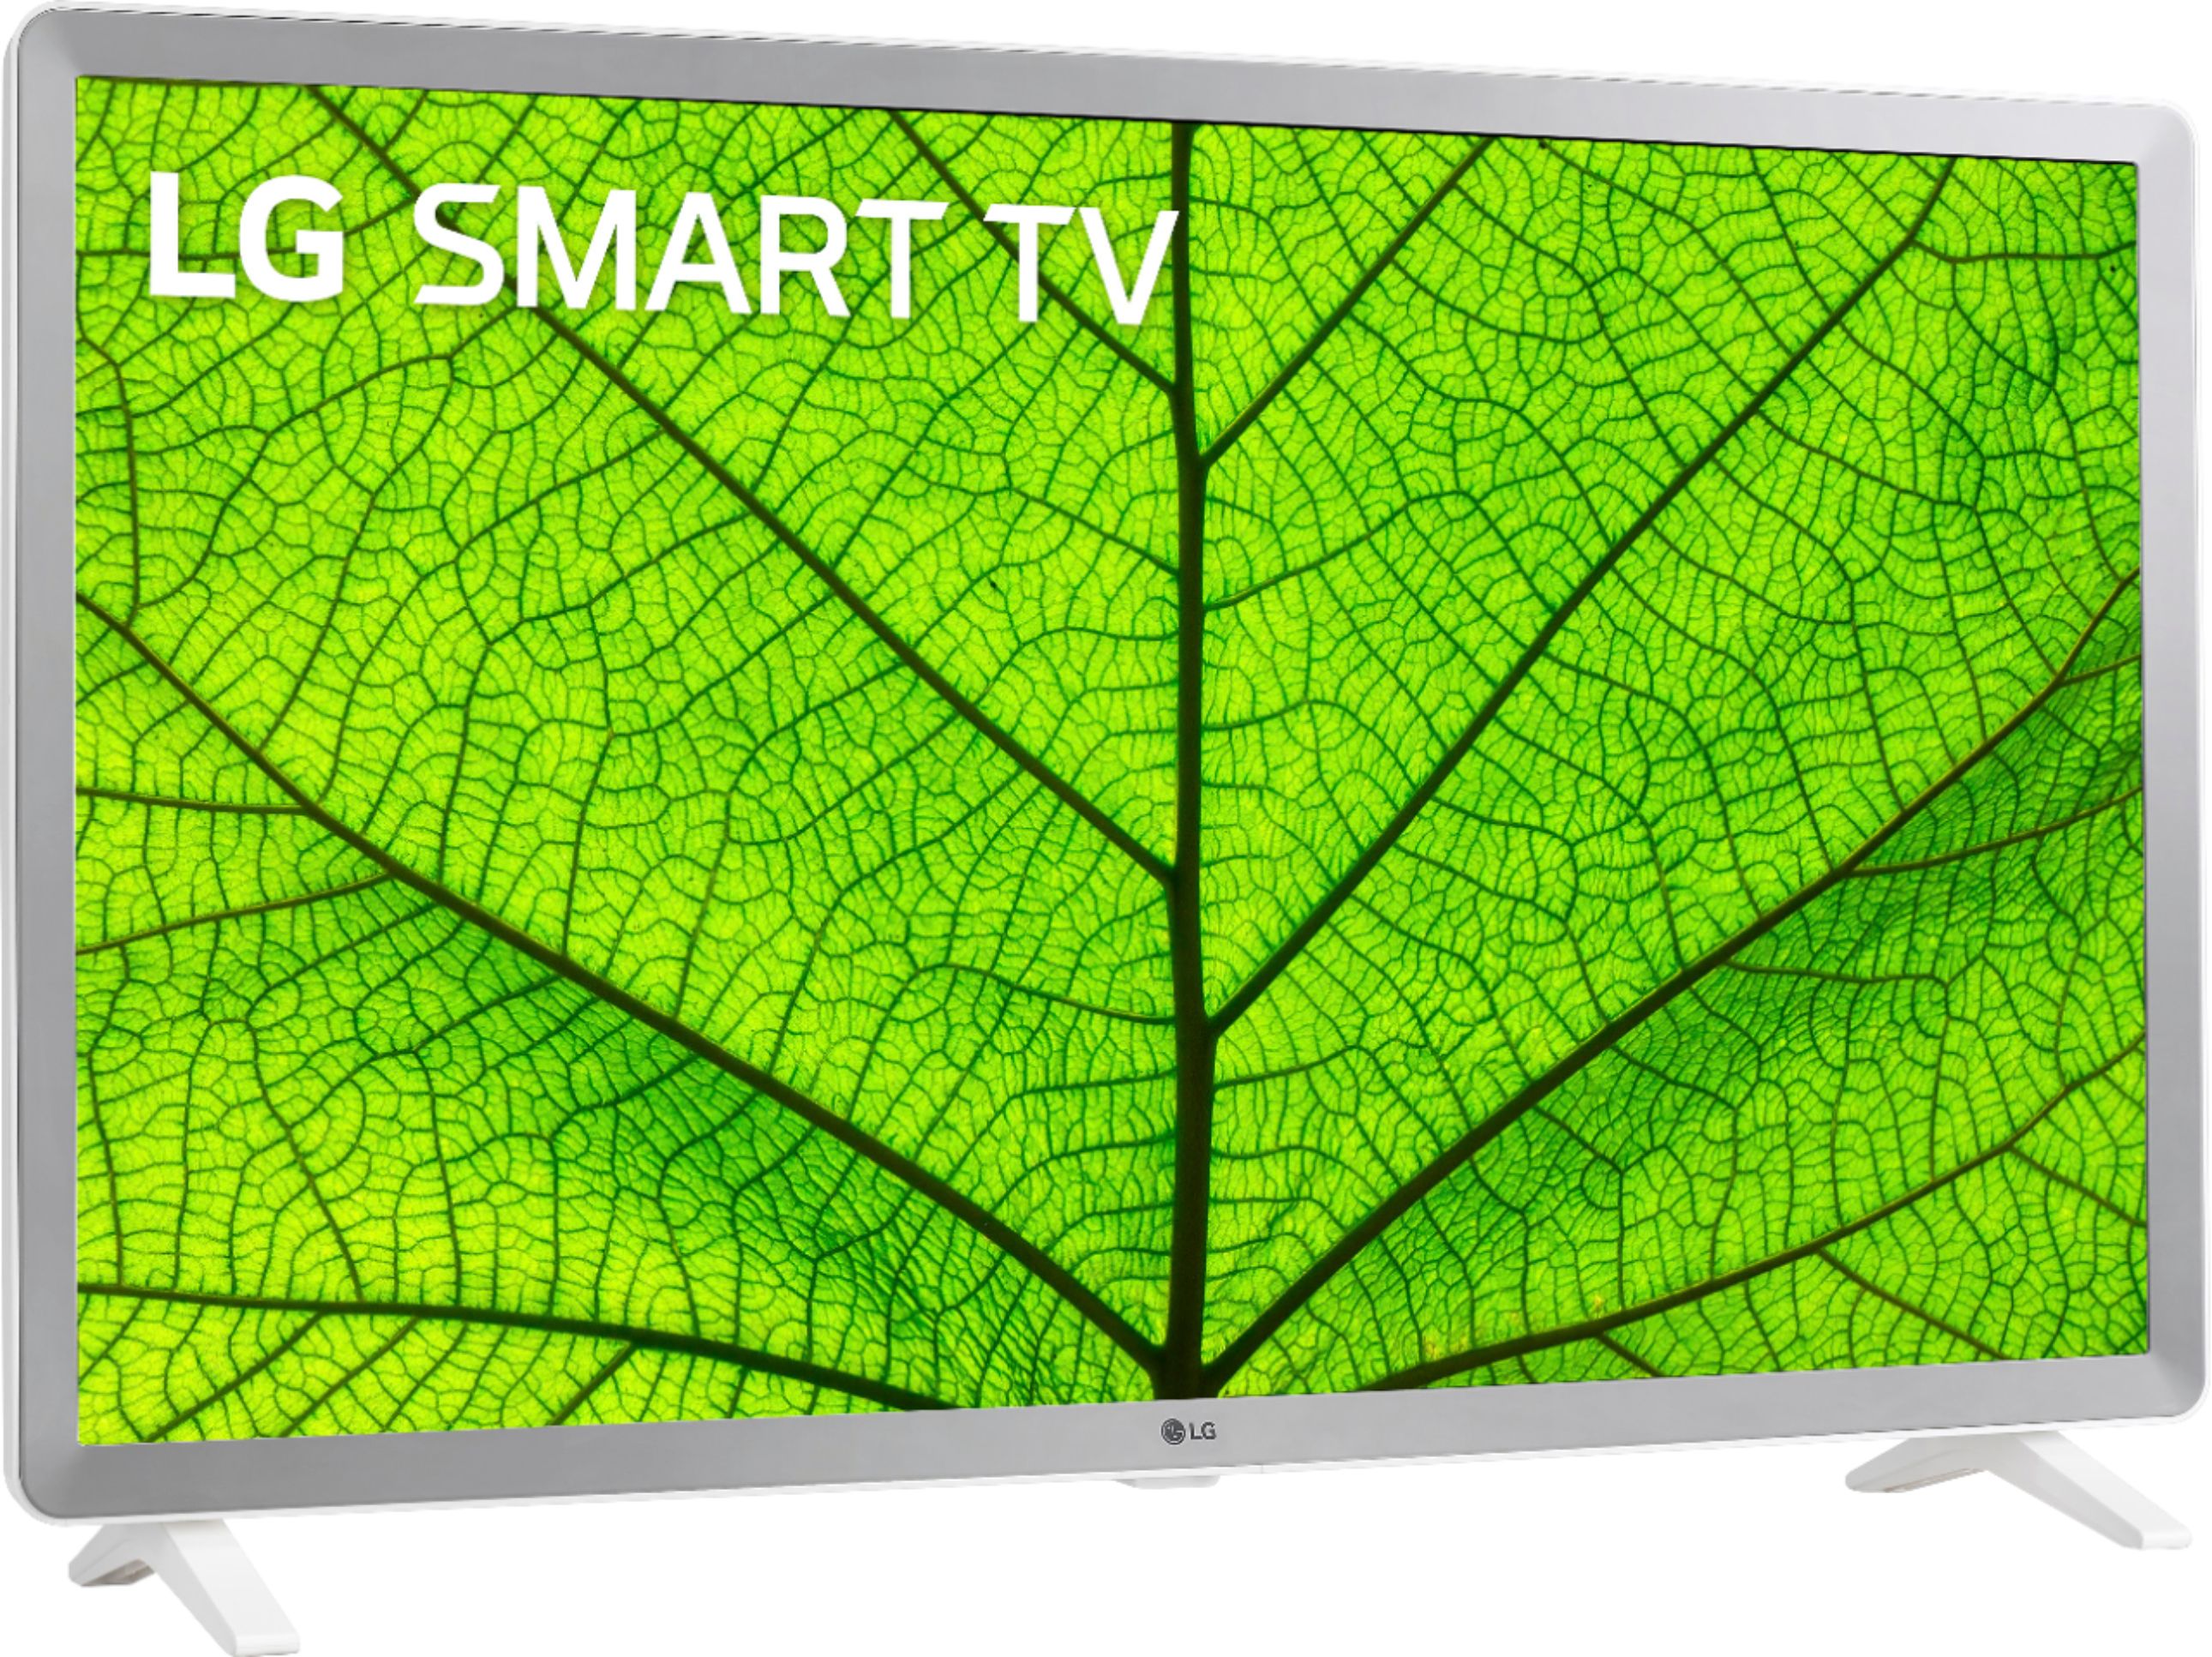 Best Buy: LG 32 Class LED HD Smart webOS TV 32LM627BPUA